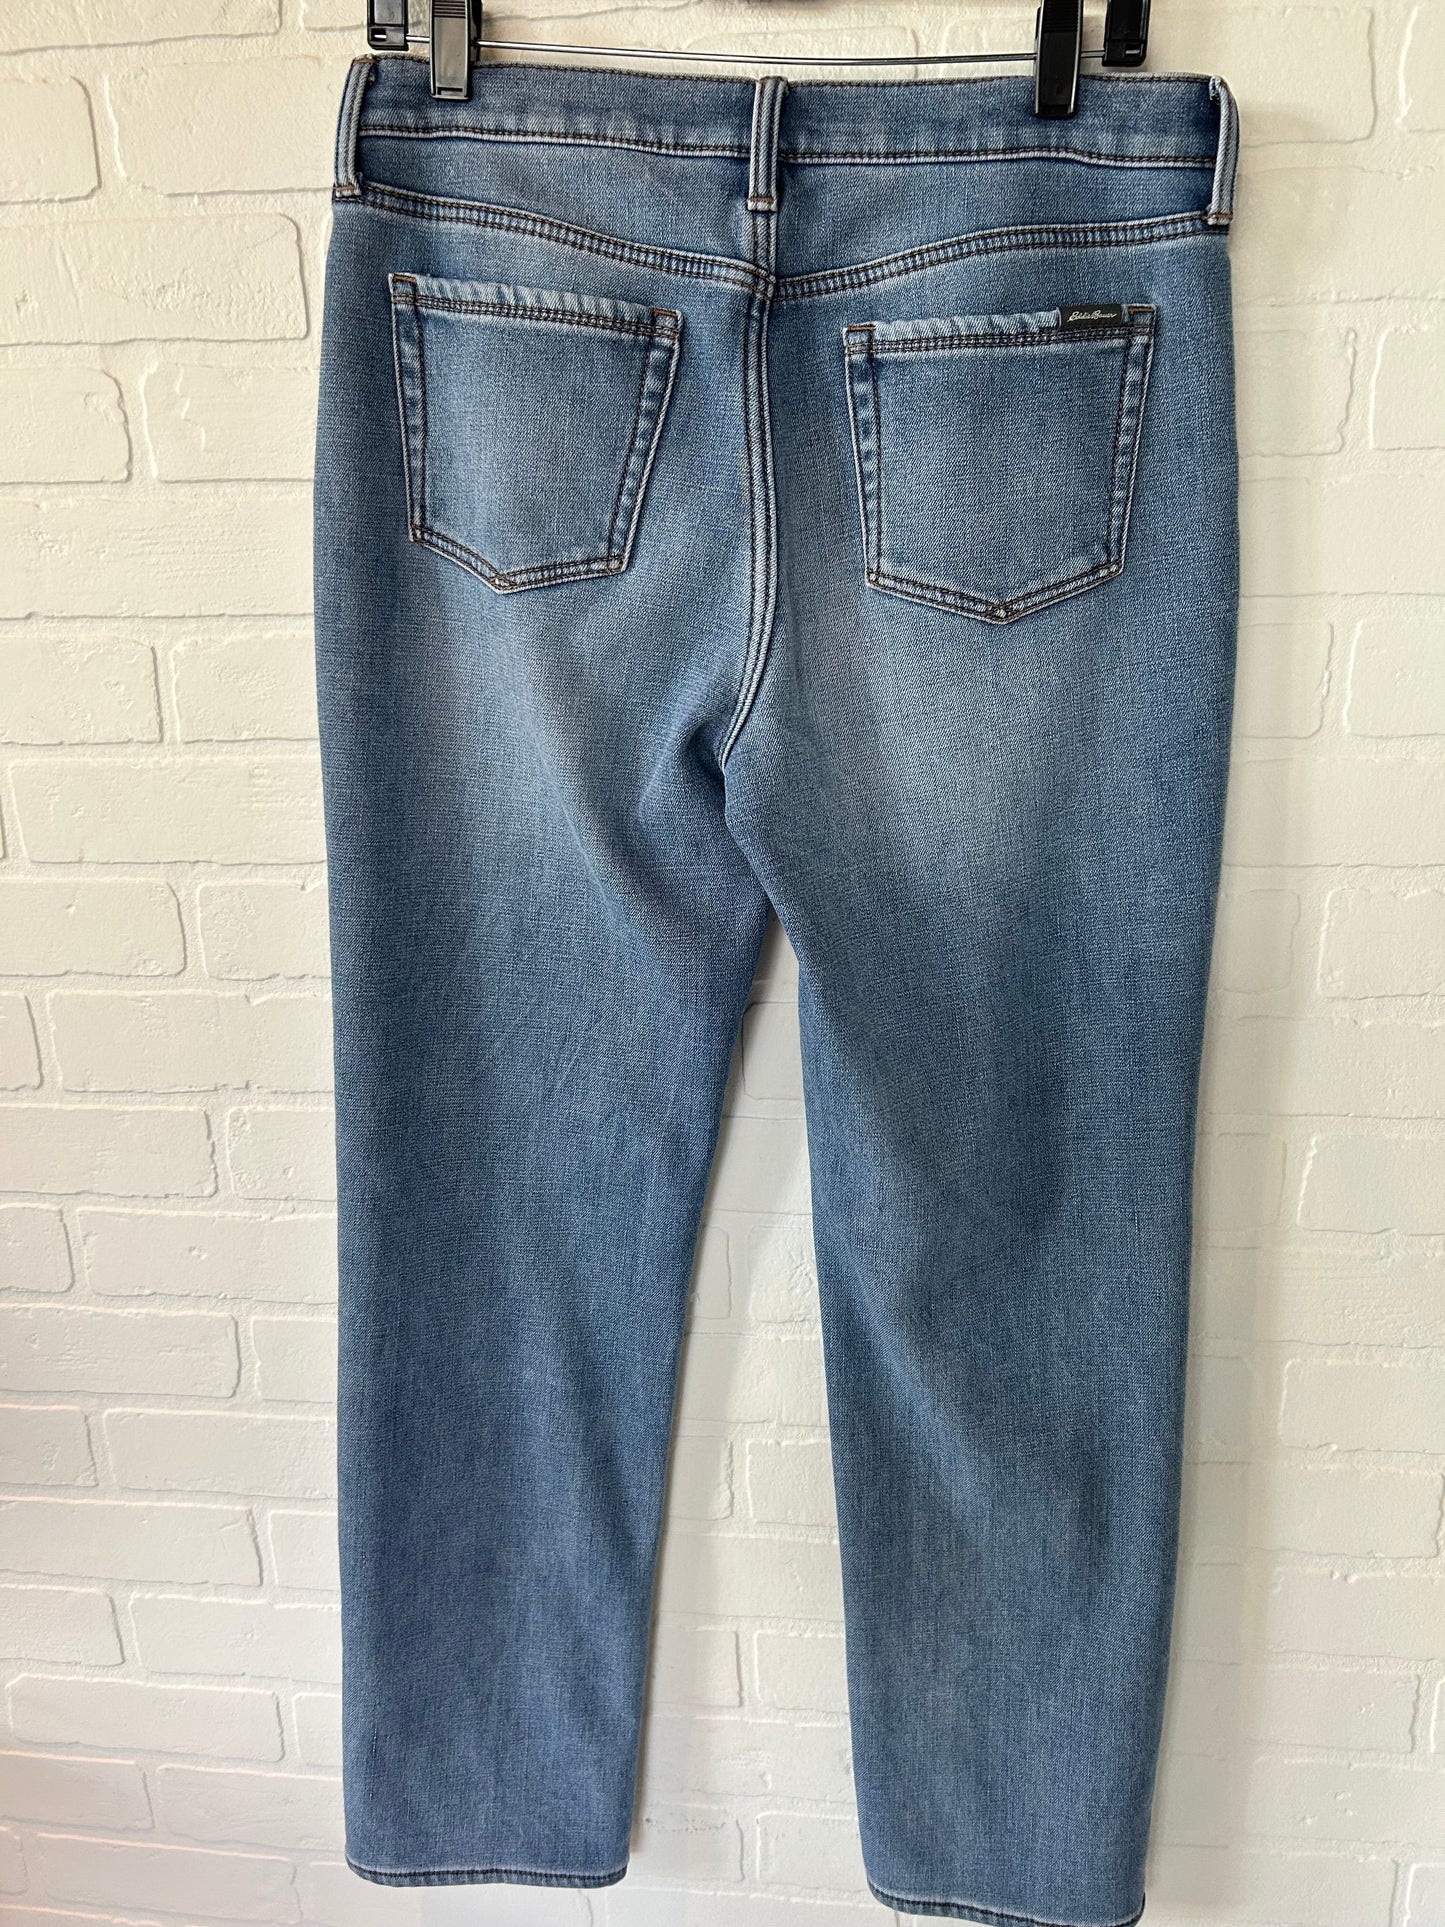 Jeans Boyfriend By Eddie Bauer  Size: 8